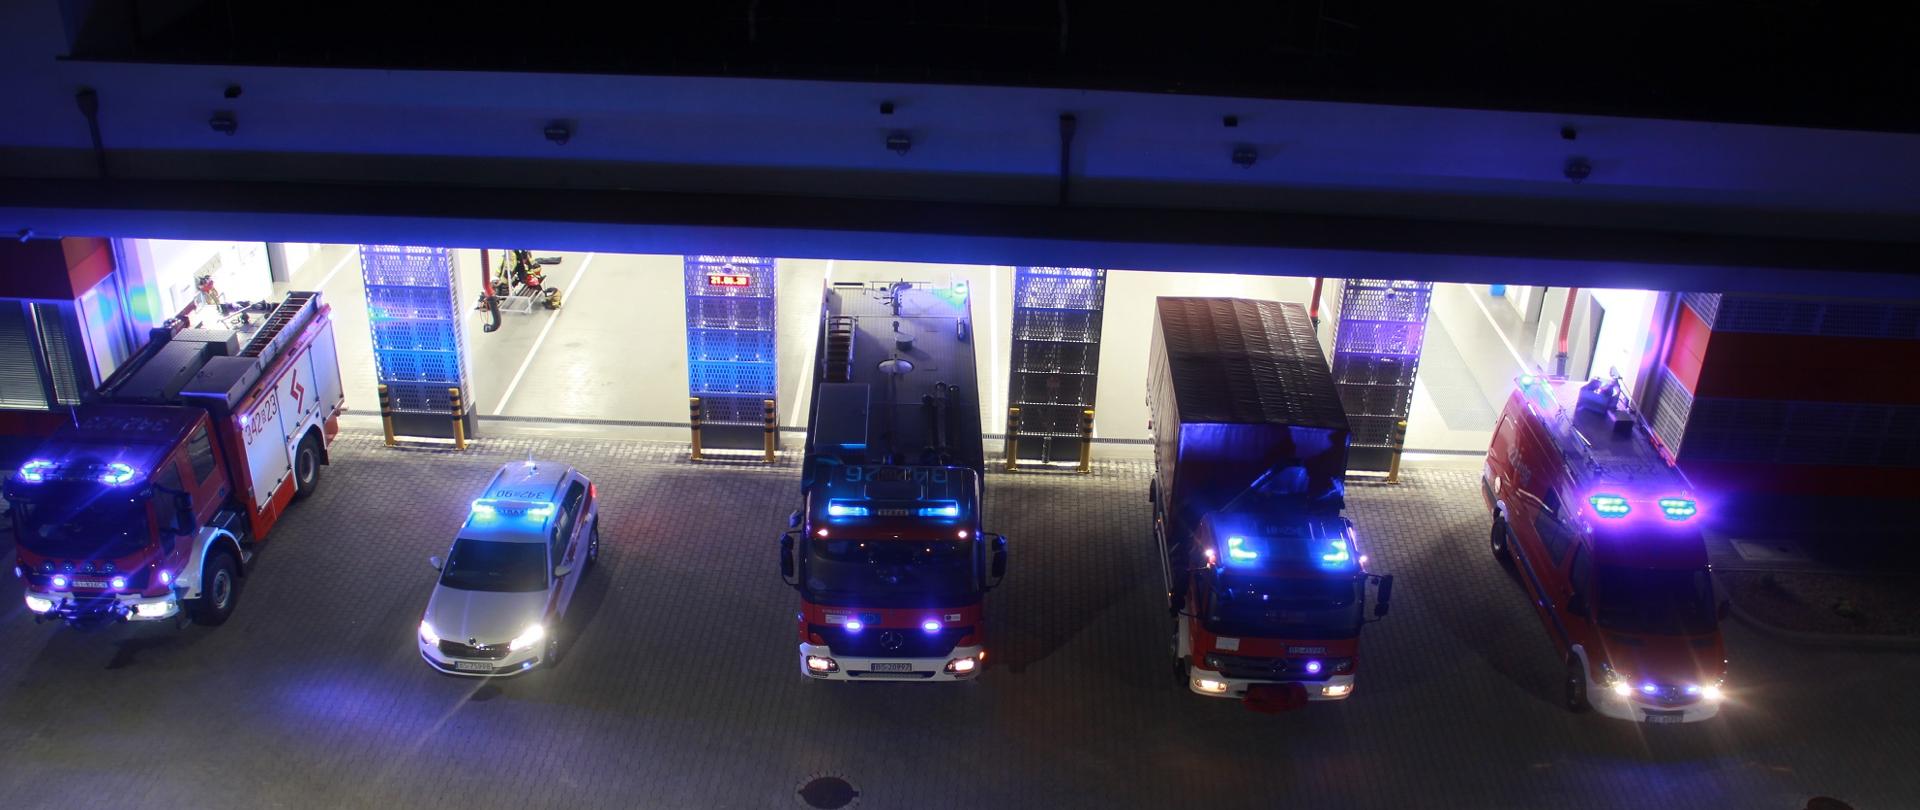 Na zdjęciu widać w nocy przed bramami garaży 5 samochodów strażackich z włączonymi sygnałami świetlnymi.